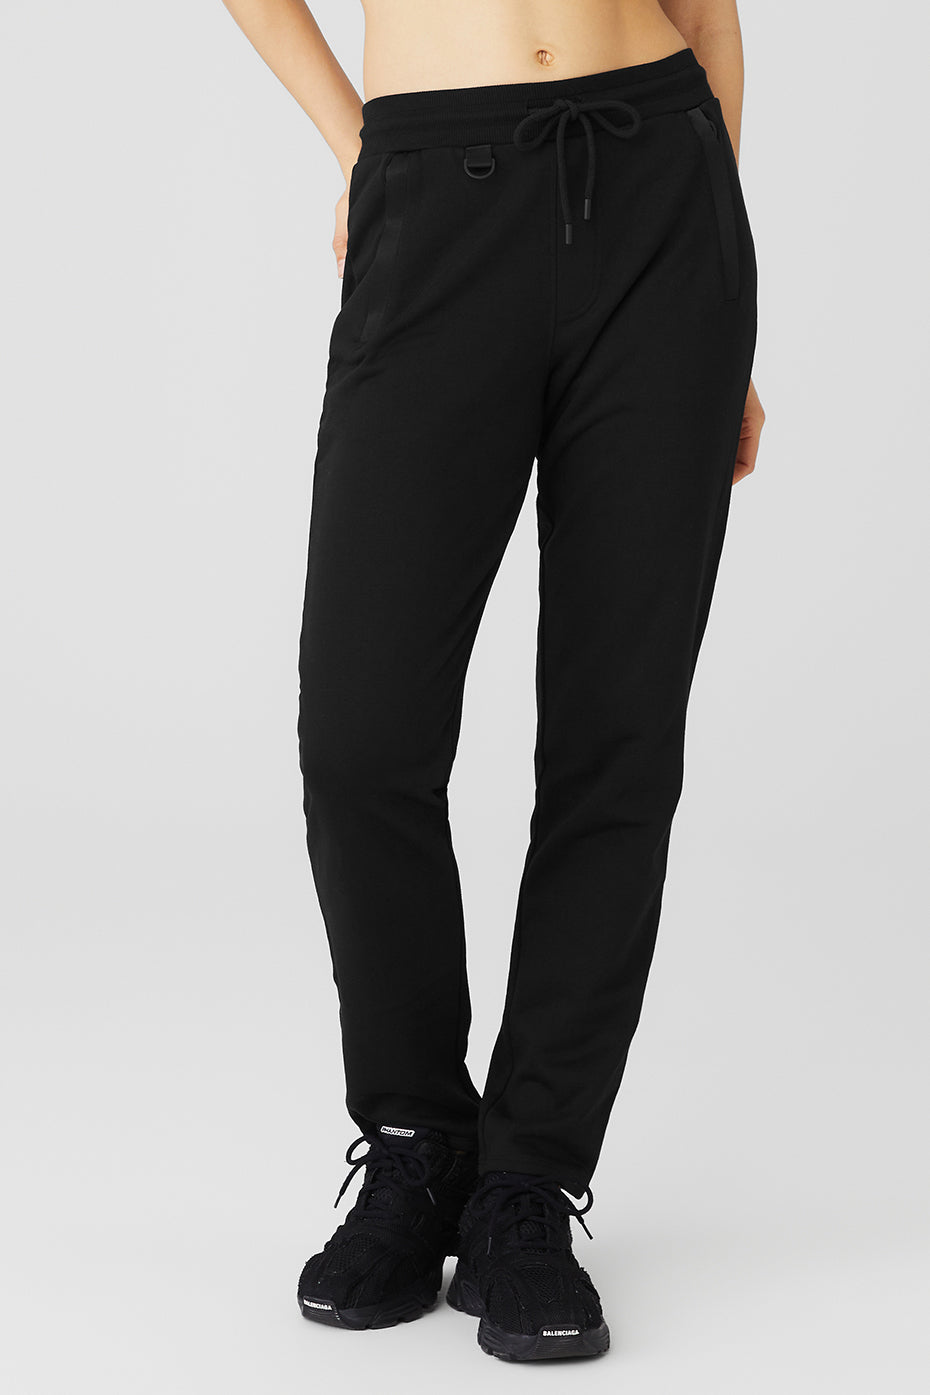 Alo Yoga  Puddle Sweatpant in Black, Size: Large - ShopStyle Activewear  Pants